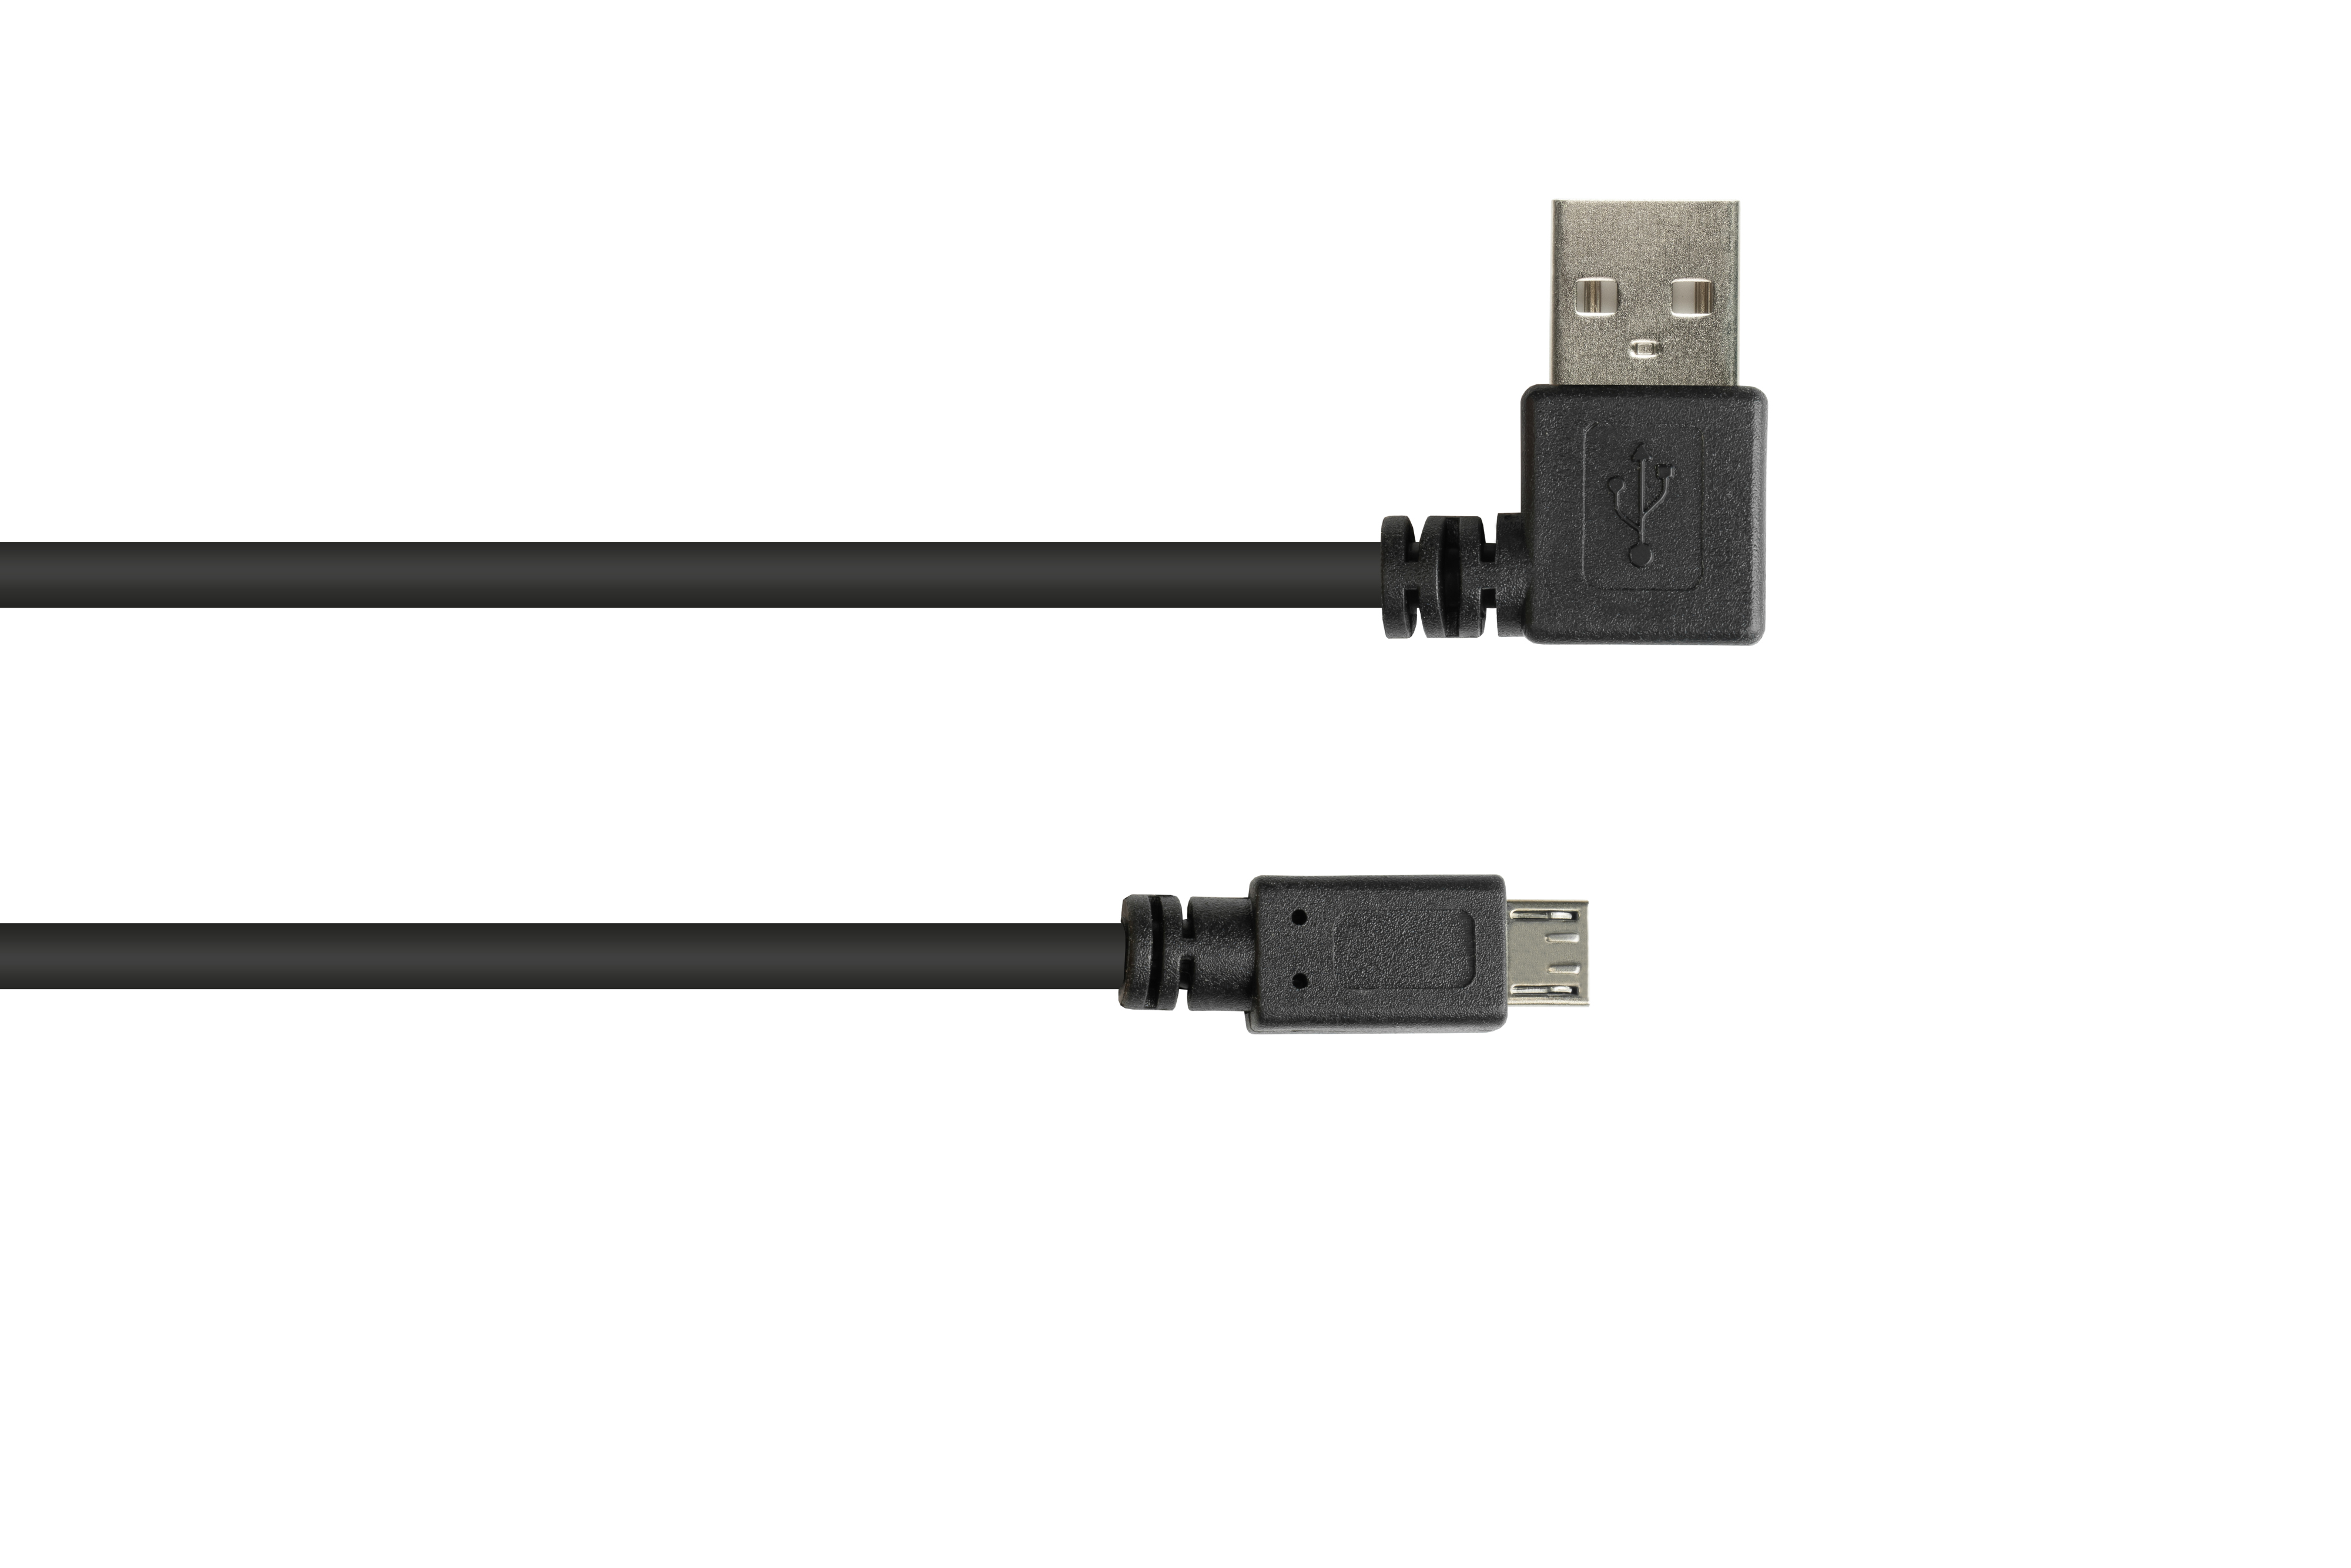 gewinkelt Stecker Anschlusskabel EASY an schwarz USB GOOD Stecker Micro CONNECTIONS 2.0 A B,